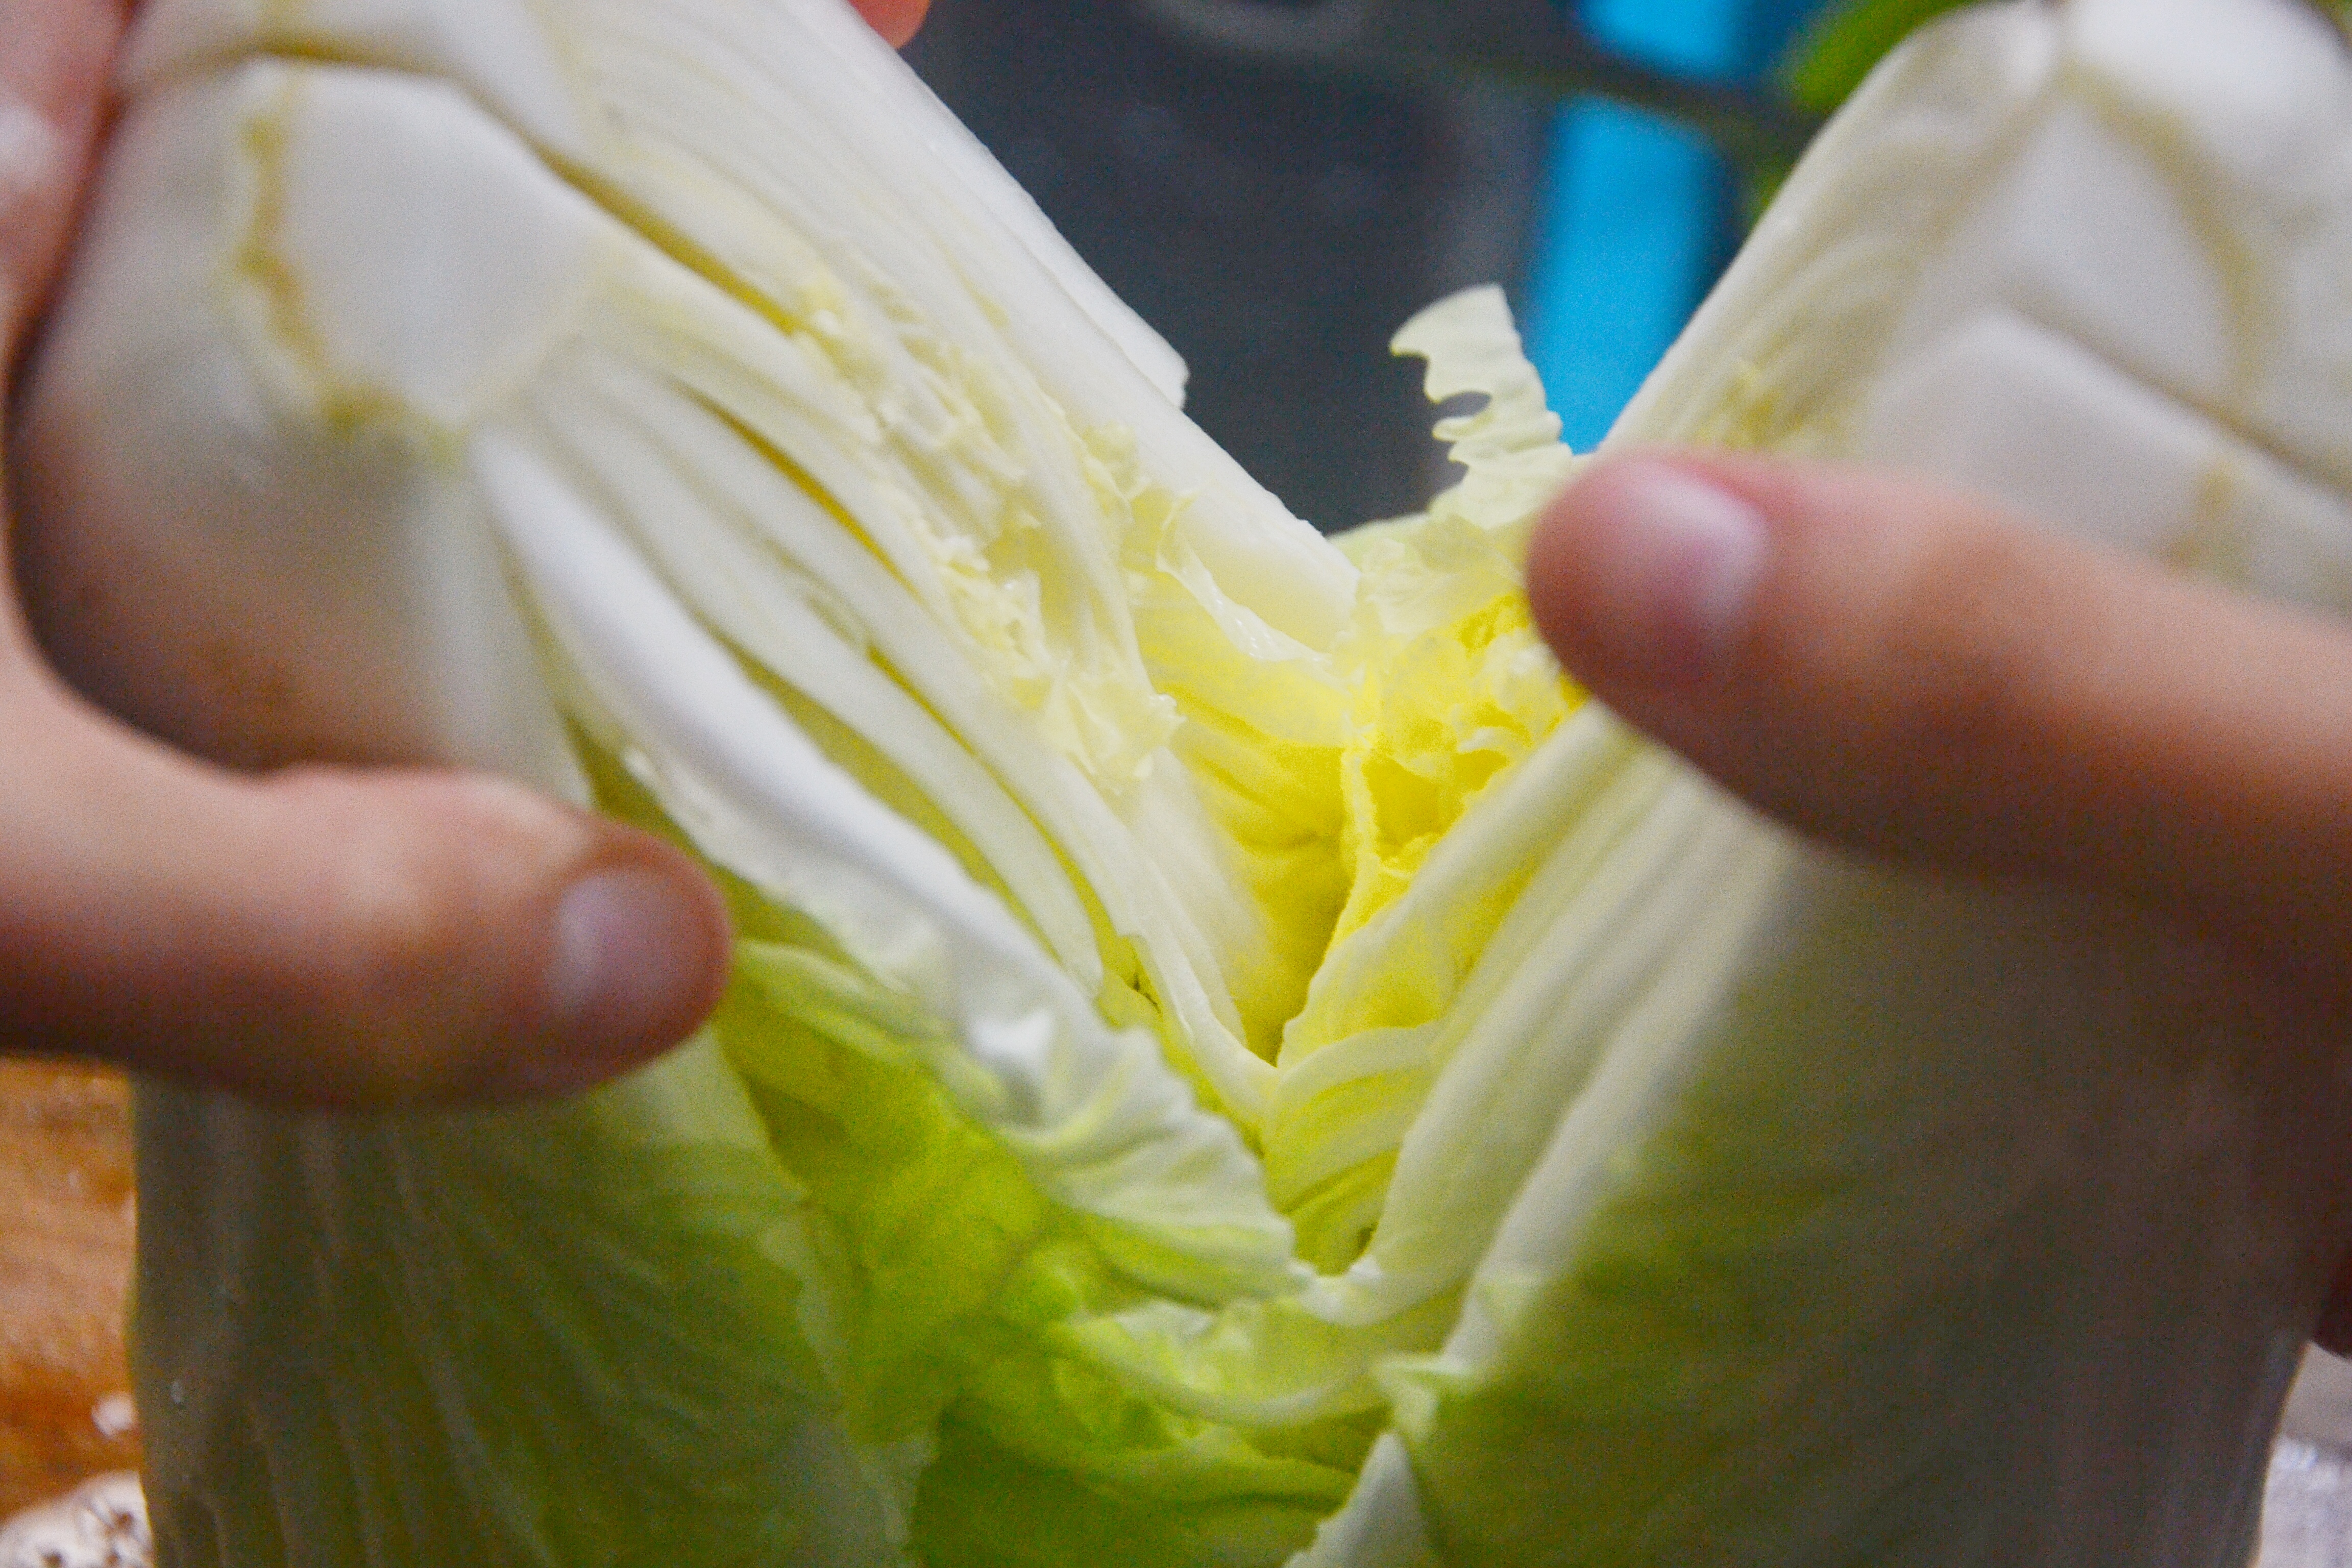 2.清洗好的大白菜,用手把150g食盐洒在每片菜叶子上